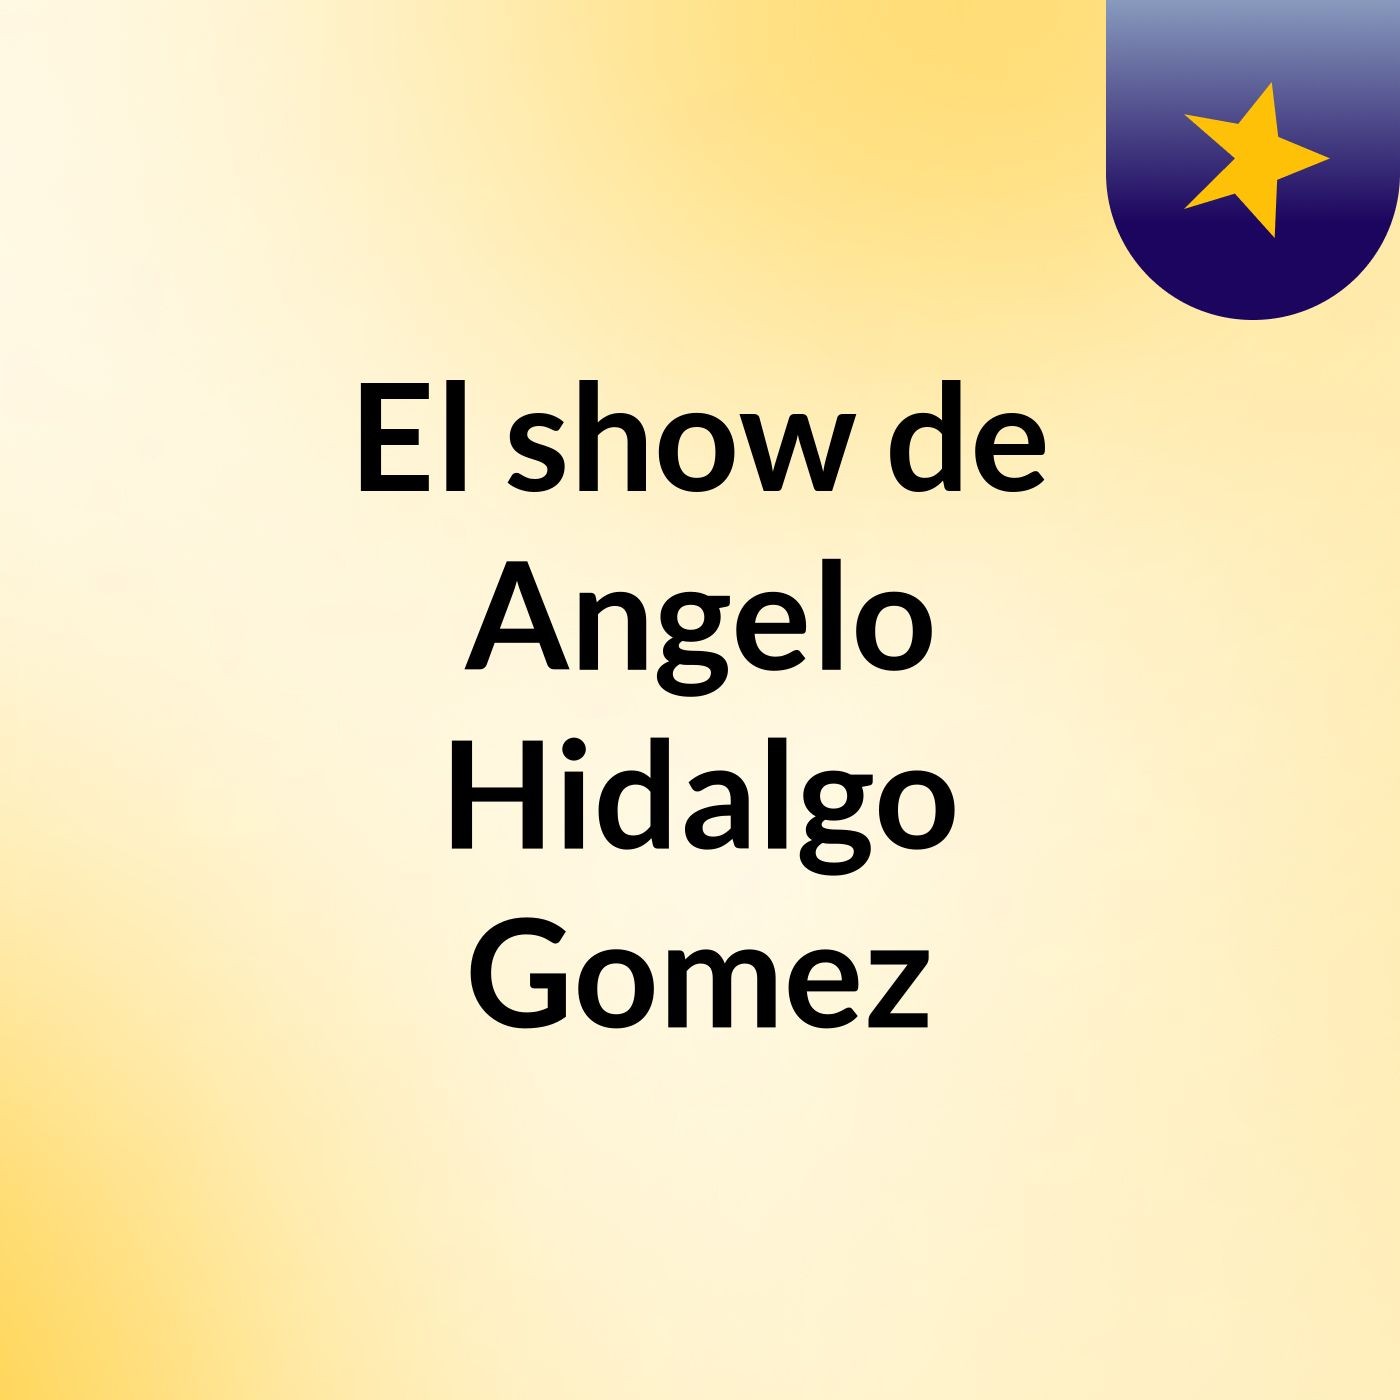 El show de Angelo Hidalgo Gomez